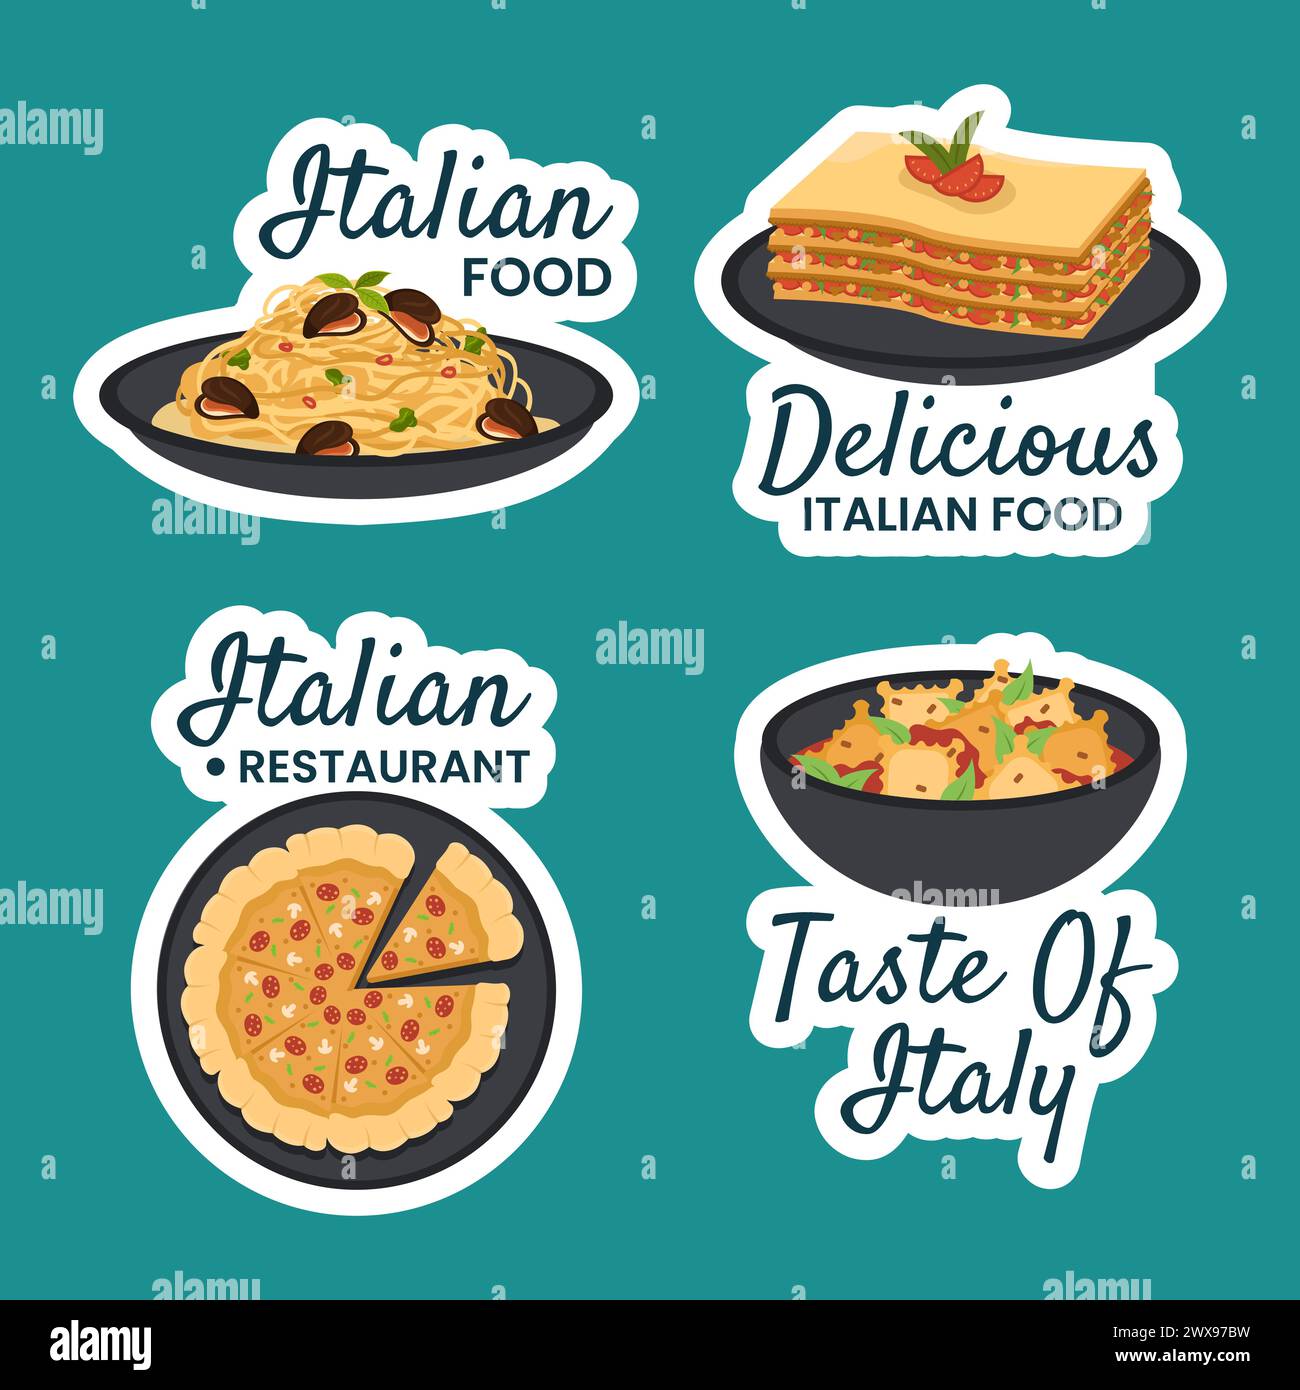 Illustration de fond des modèles dessinés à la main à l'aide d'étiquettes alimentaires italiennes Illustration de Vecteur